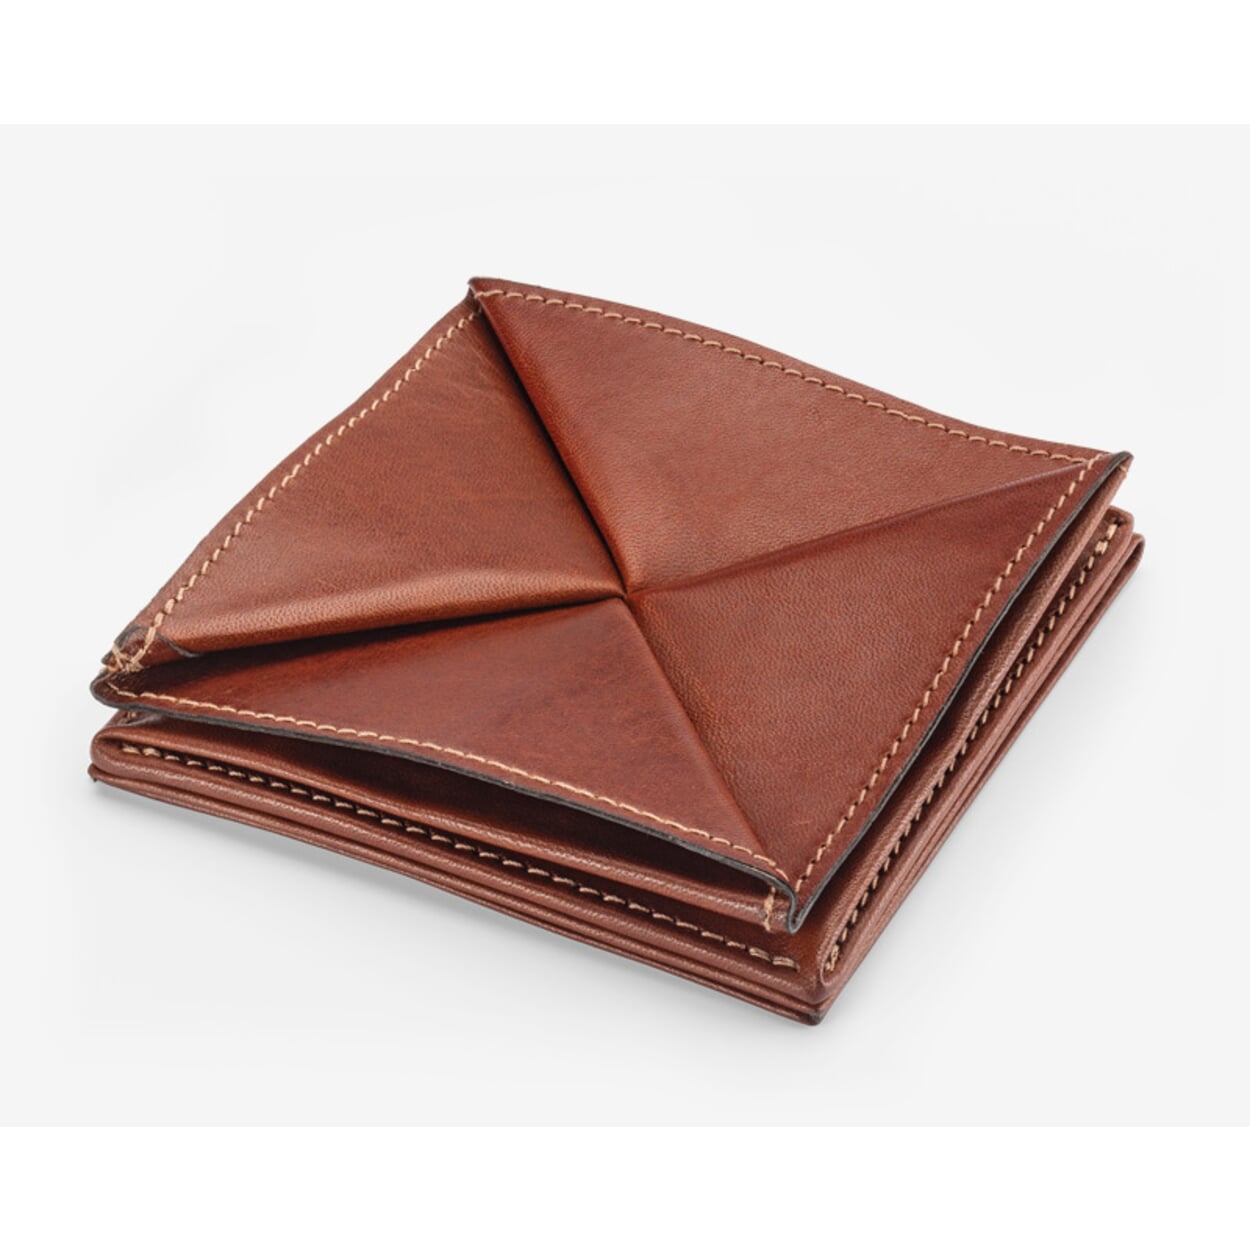 Folding wallet